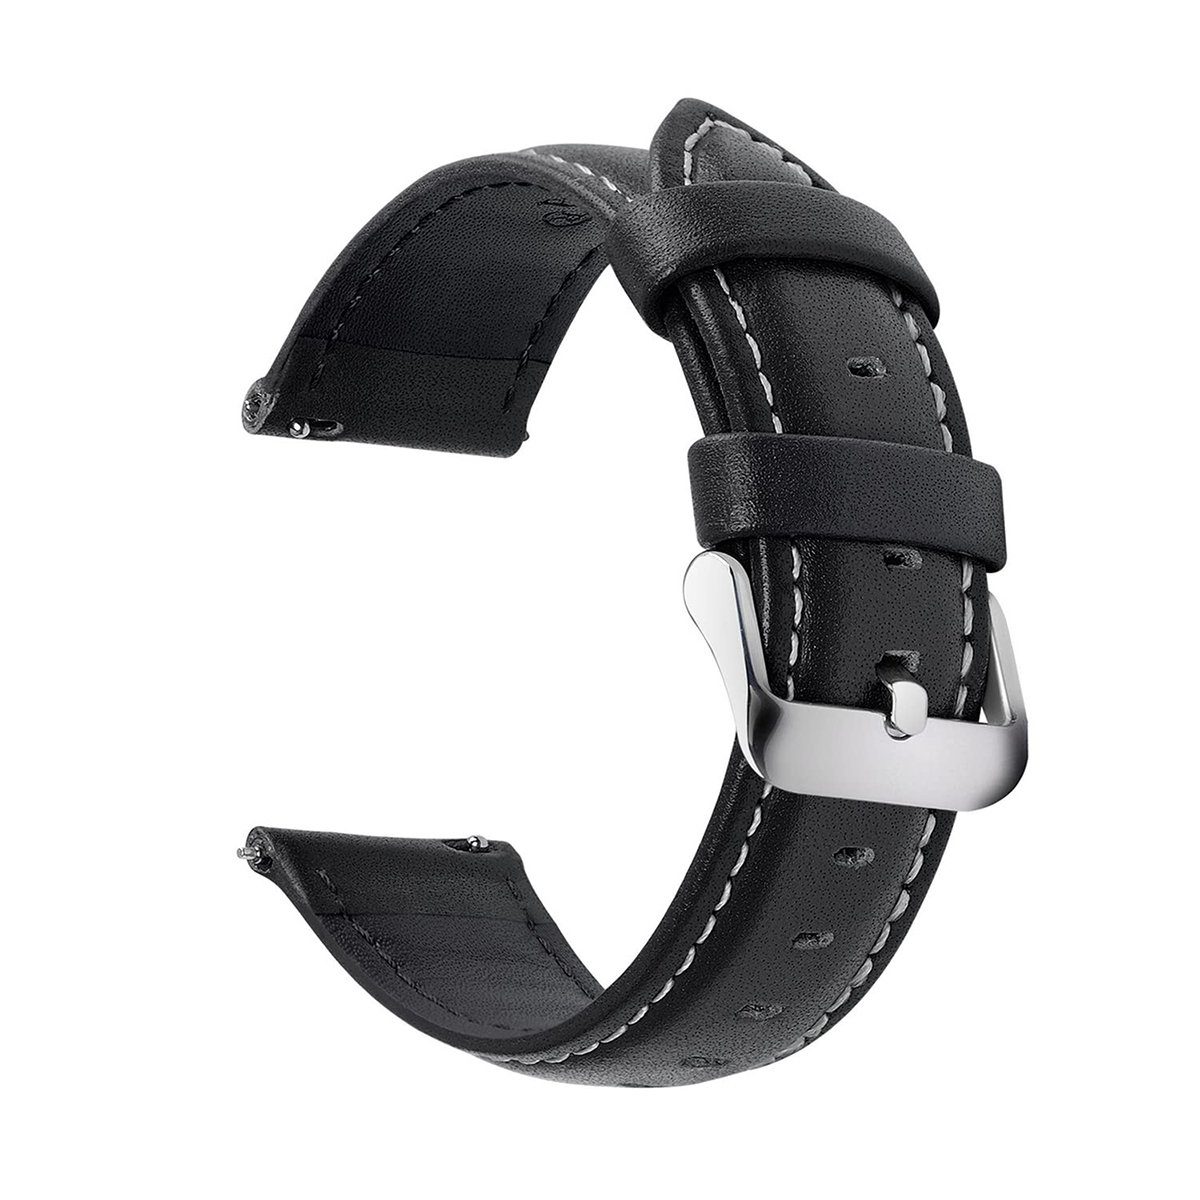 Jormftte Armband,20mm Uhrenarmband Uhrenarmband Kunstlederarmband,Schwarz